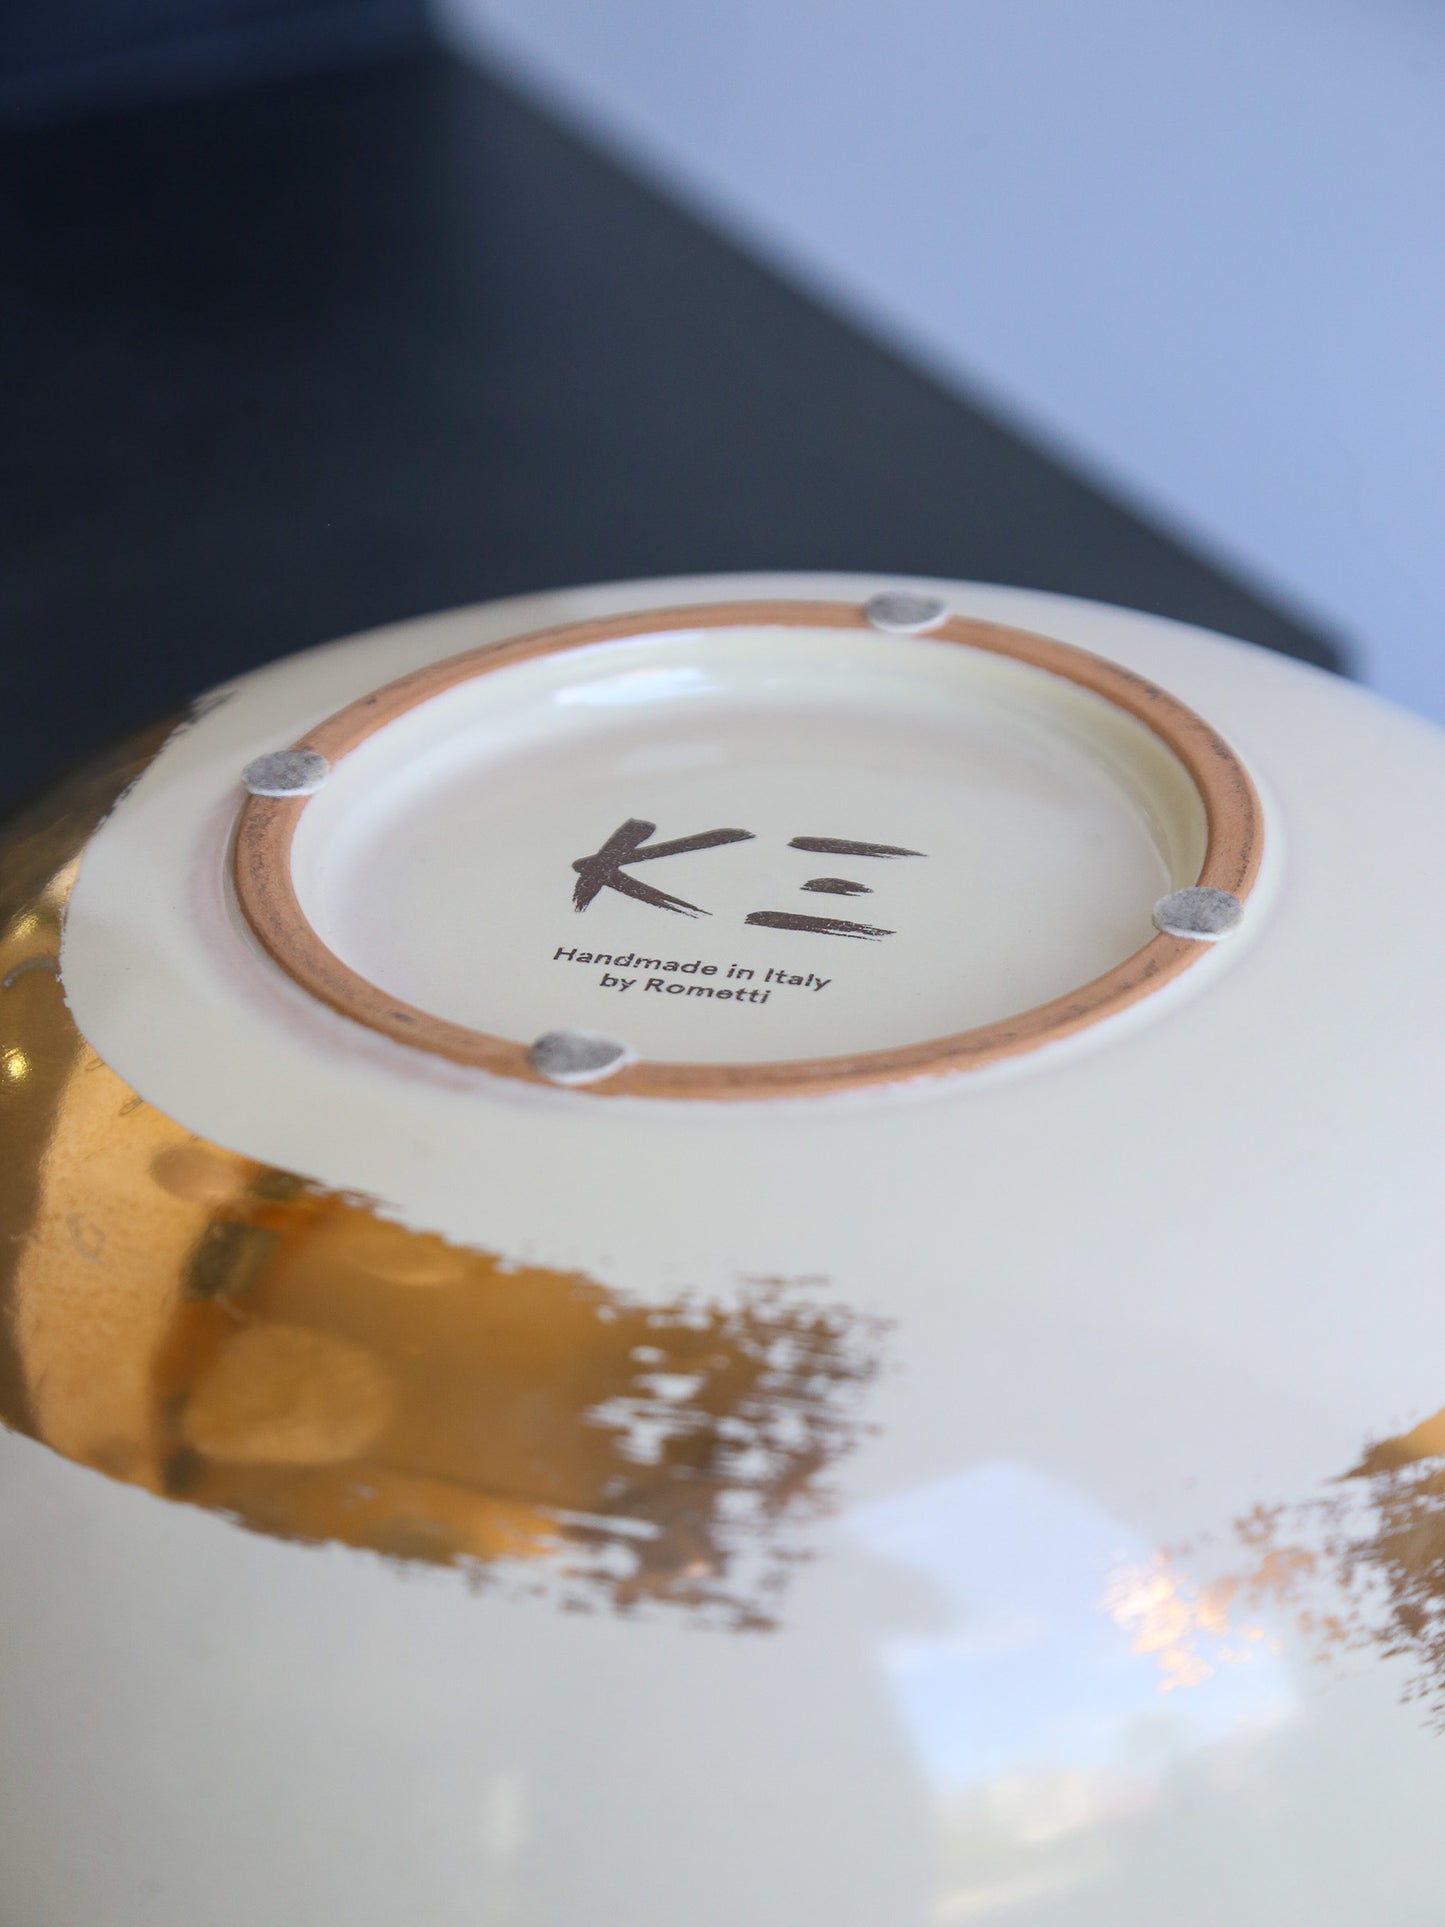 Kenzo Takada for Rometti Ceramic Vase with Gold Art Work